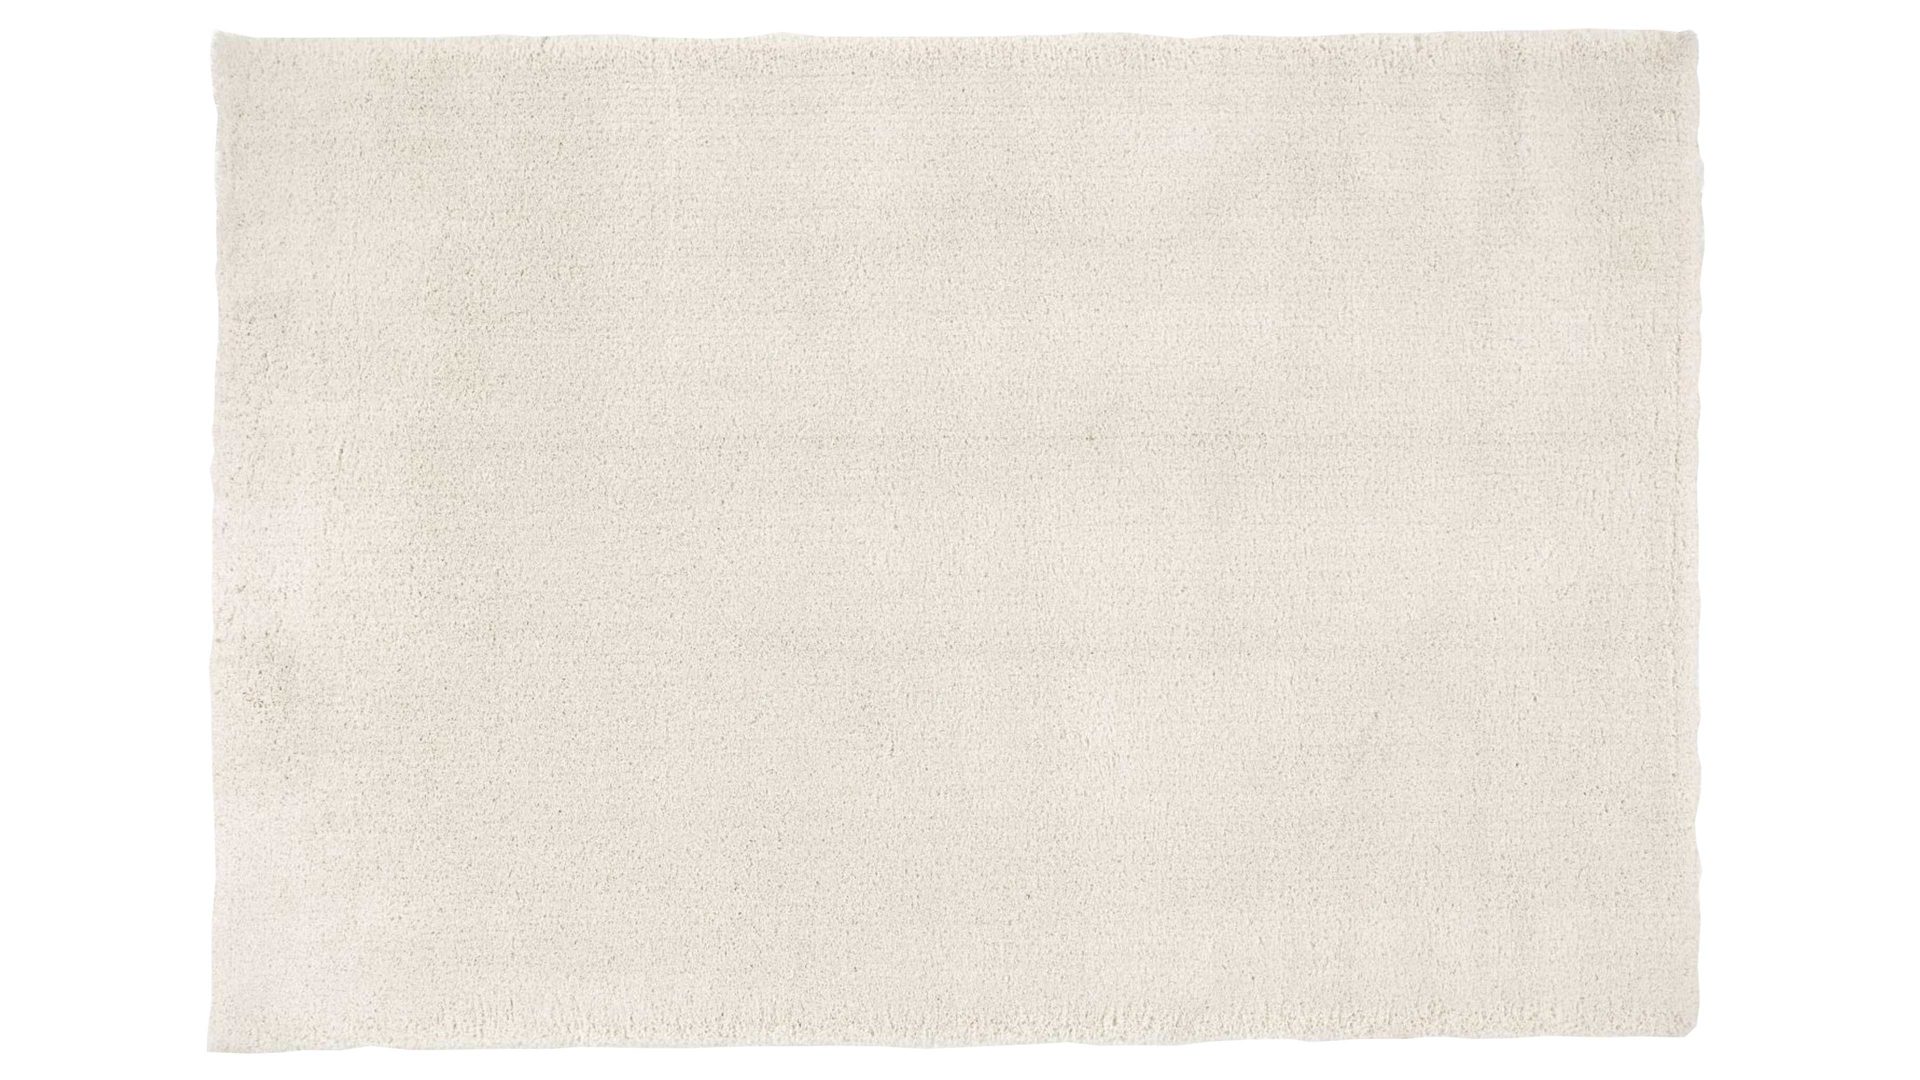 Shaggyteppich Oci aus Kunstfaser in Weiß Shaggyteppich Royal Shaggy für Ihre Wohnaccessoires cremefarbene Kunstfaser – ca. 65 x 130 cm